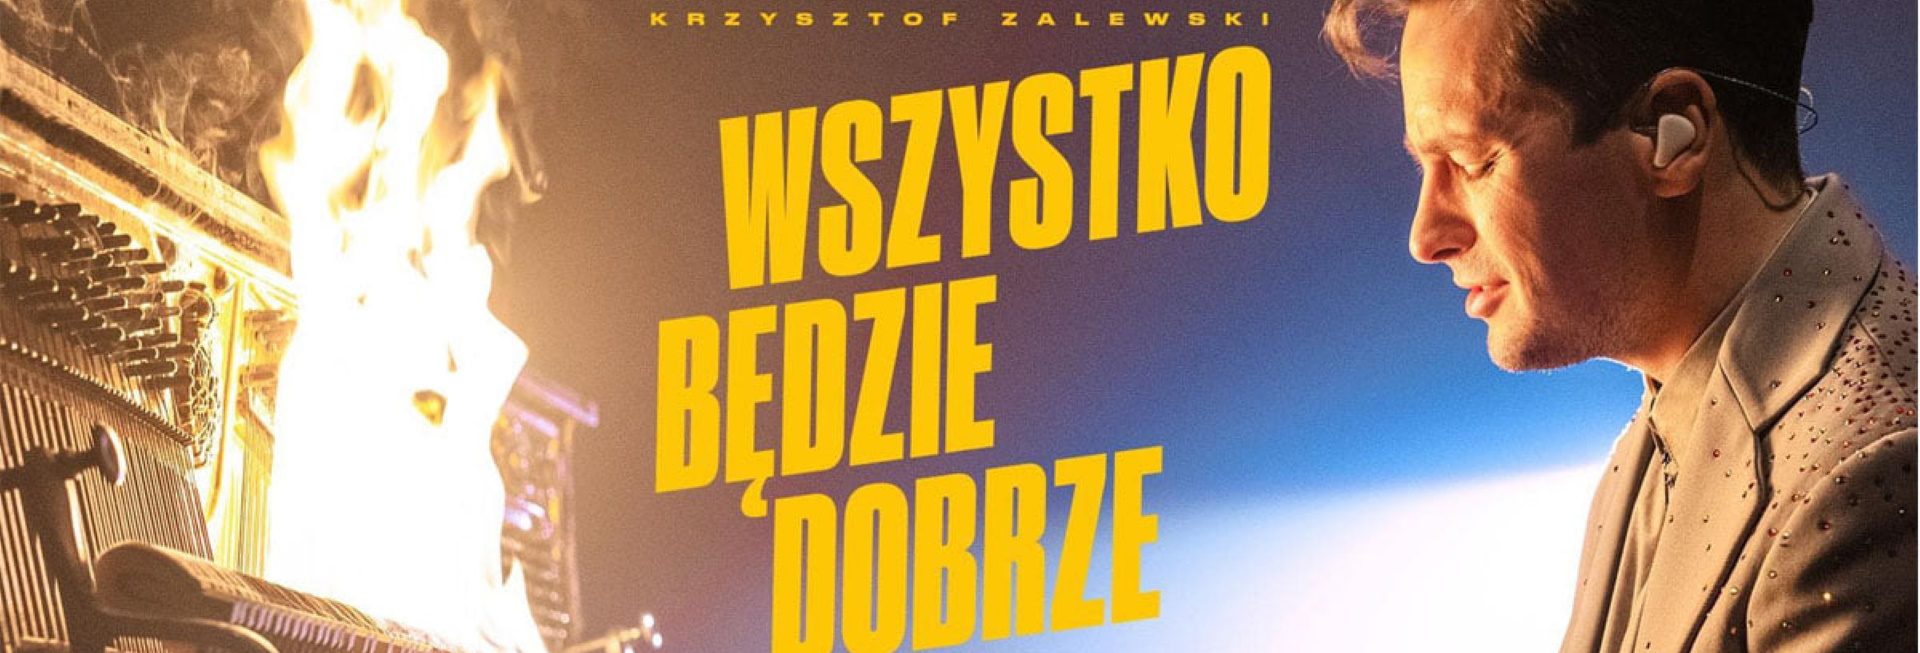 Zdjęcie zapraszające do Mrągowa na koncert Krzysztofa Zalewskiego "Wszystko będzie dobrze" - Mrągowo 2021. Na zdjęciu postać artysty podczas gry na fortepianie, który płonie. 